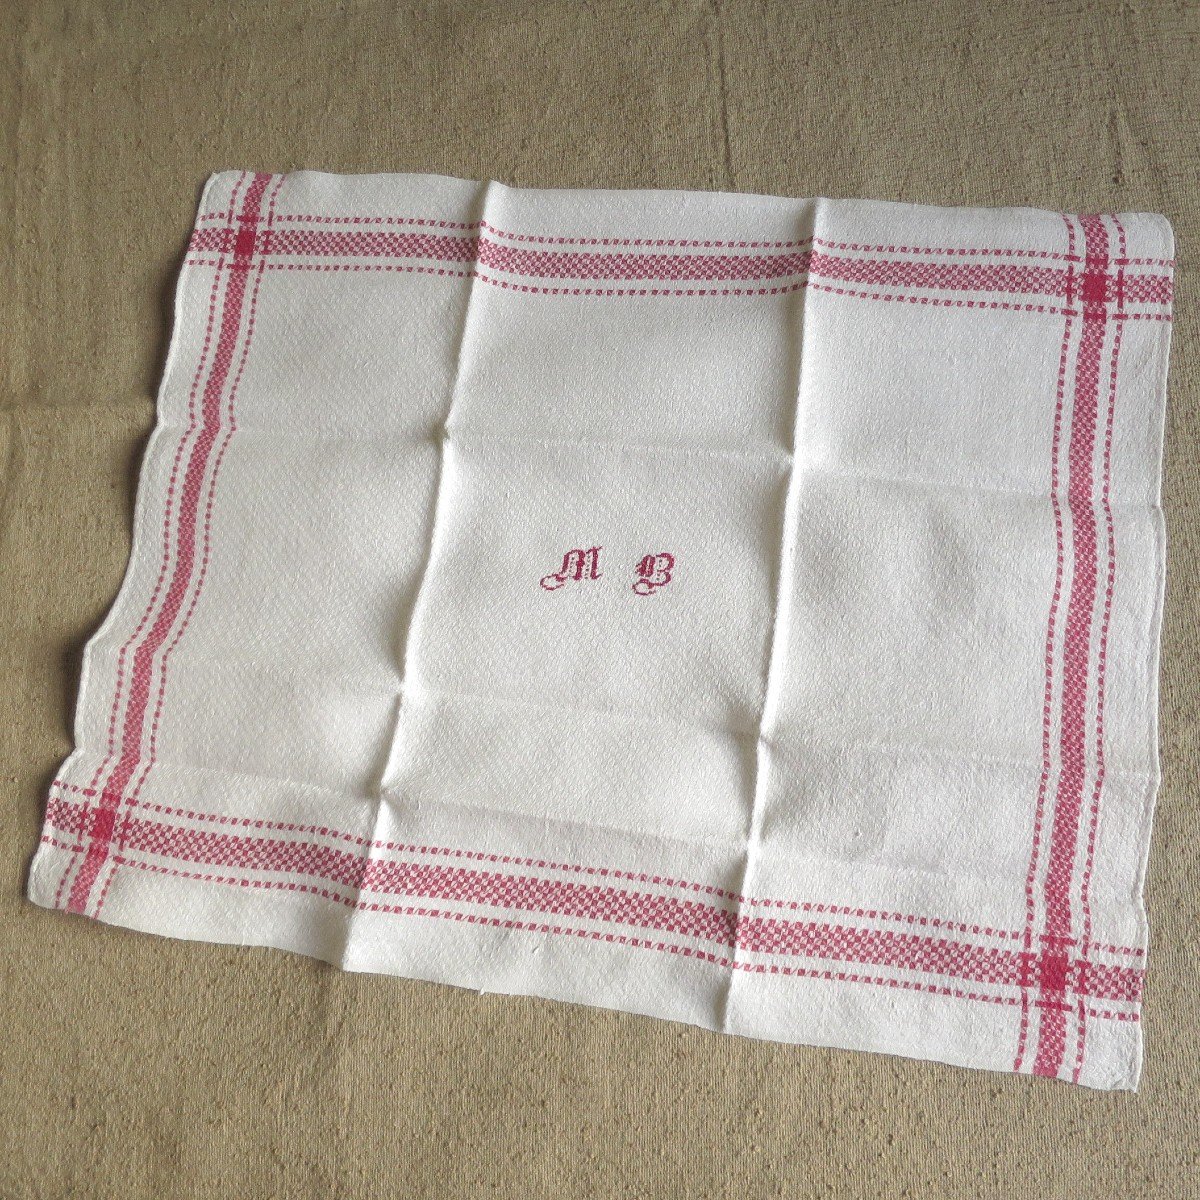 11 serviettes anciennes en lin monogrammées MB en rouge, début XX°